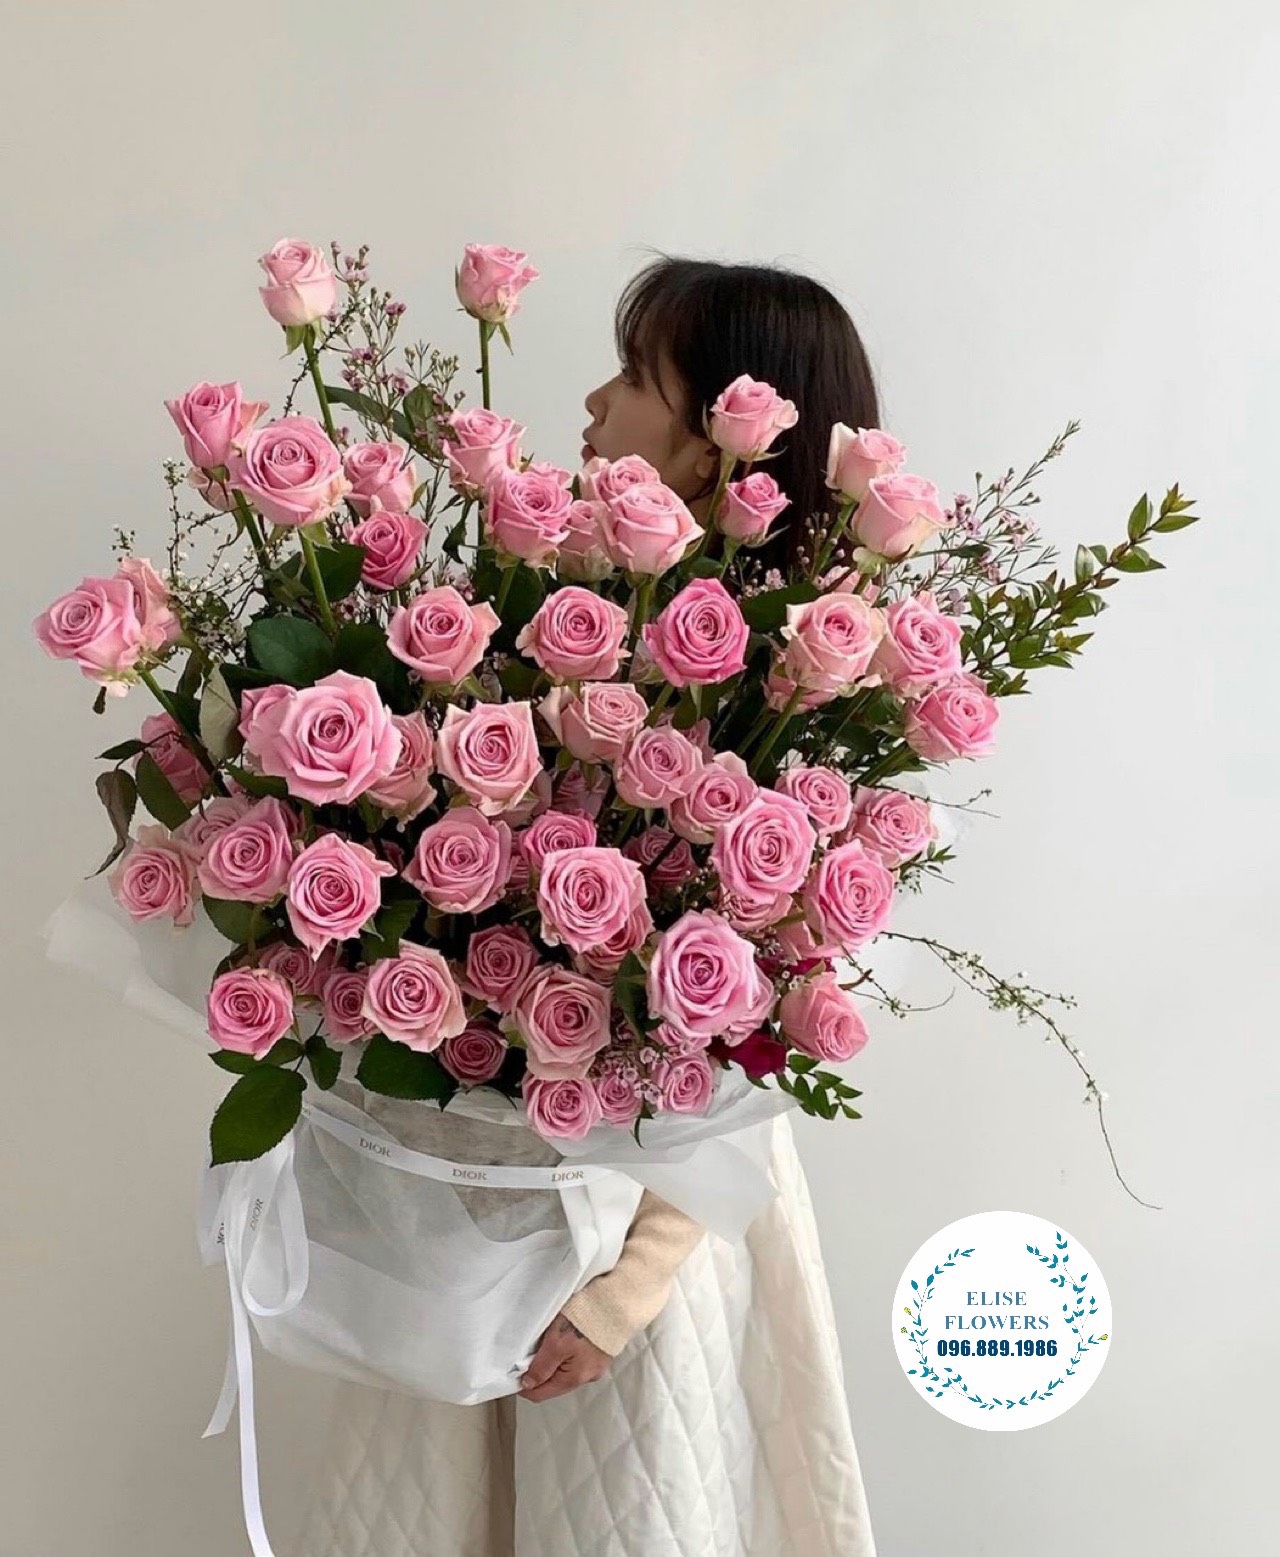 HOA TẶNG VỢ 8 - 3 | Lẵng hoa đẹp tặng vợ nhân ngày quốc tế phụ nữ 8/3 | Dienhoahanoi24h.vn